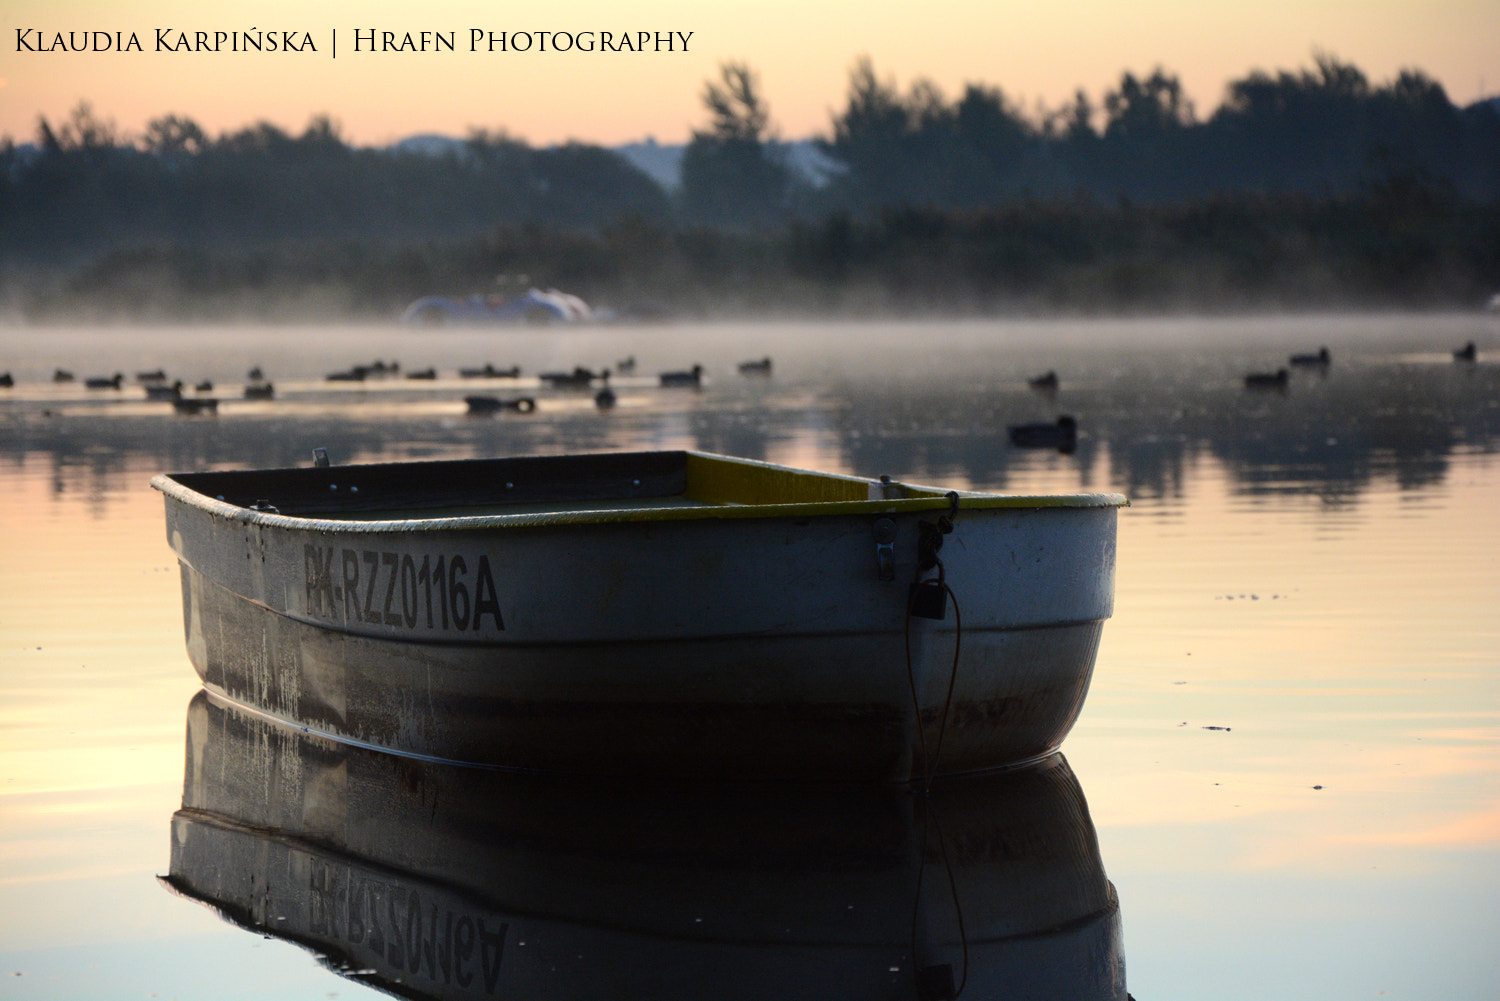 IX-Nikkor 60-180mm f/4.5-5.6 sample photo. Boat before sunrise photography